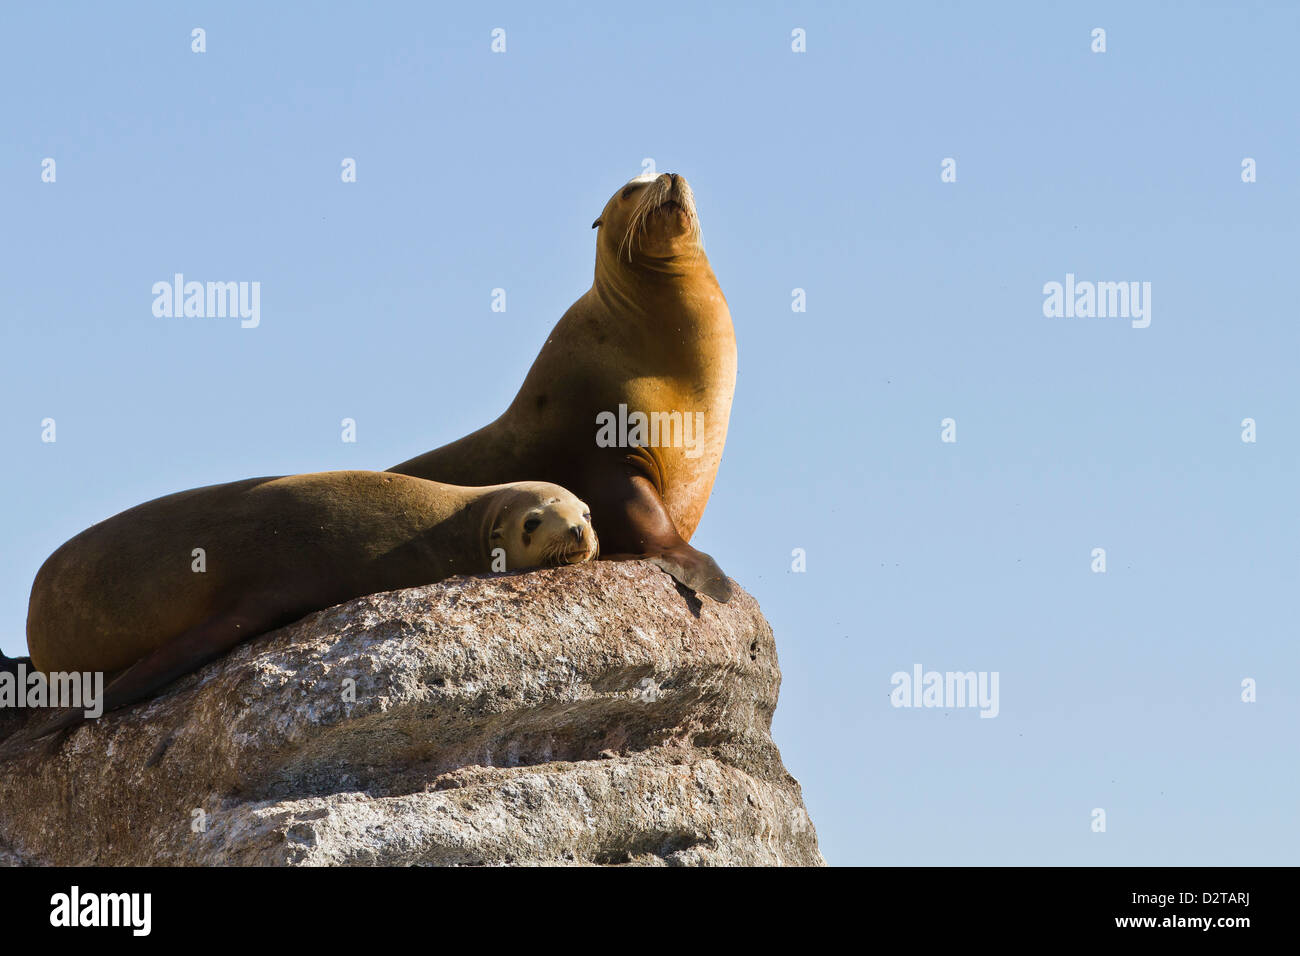 California sea lion (Zalophus californianus), Los Islotes, Baja California Sur, Gulf of California (Sea of Cortez), Mexico Stock Photo